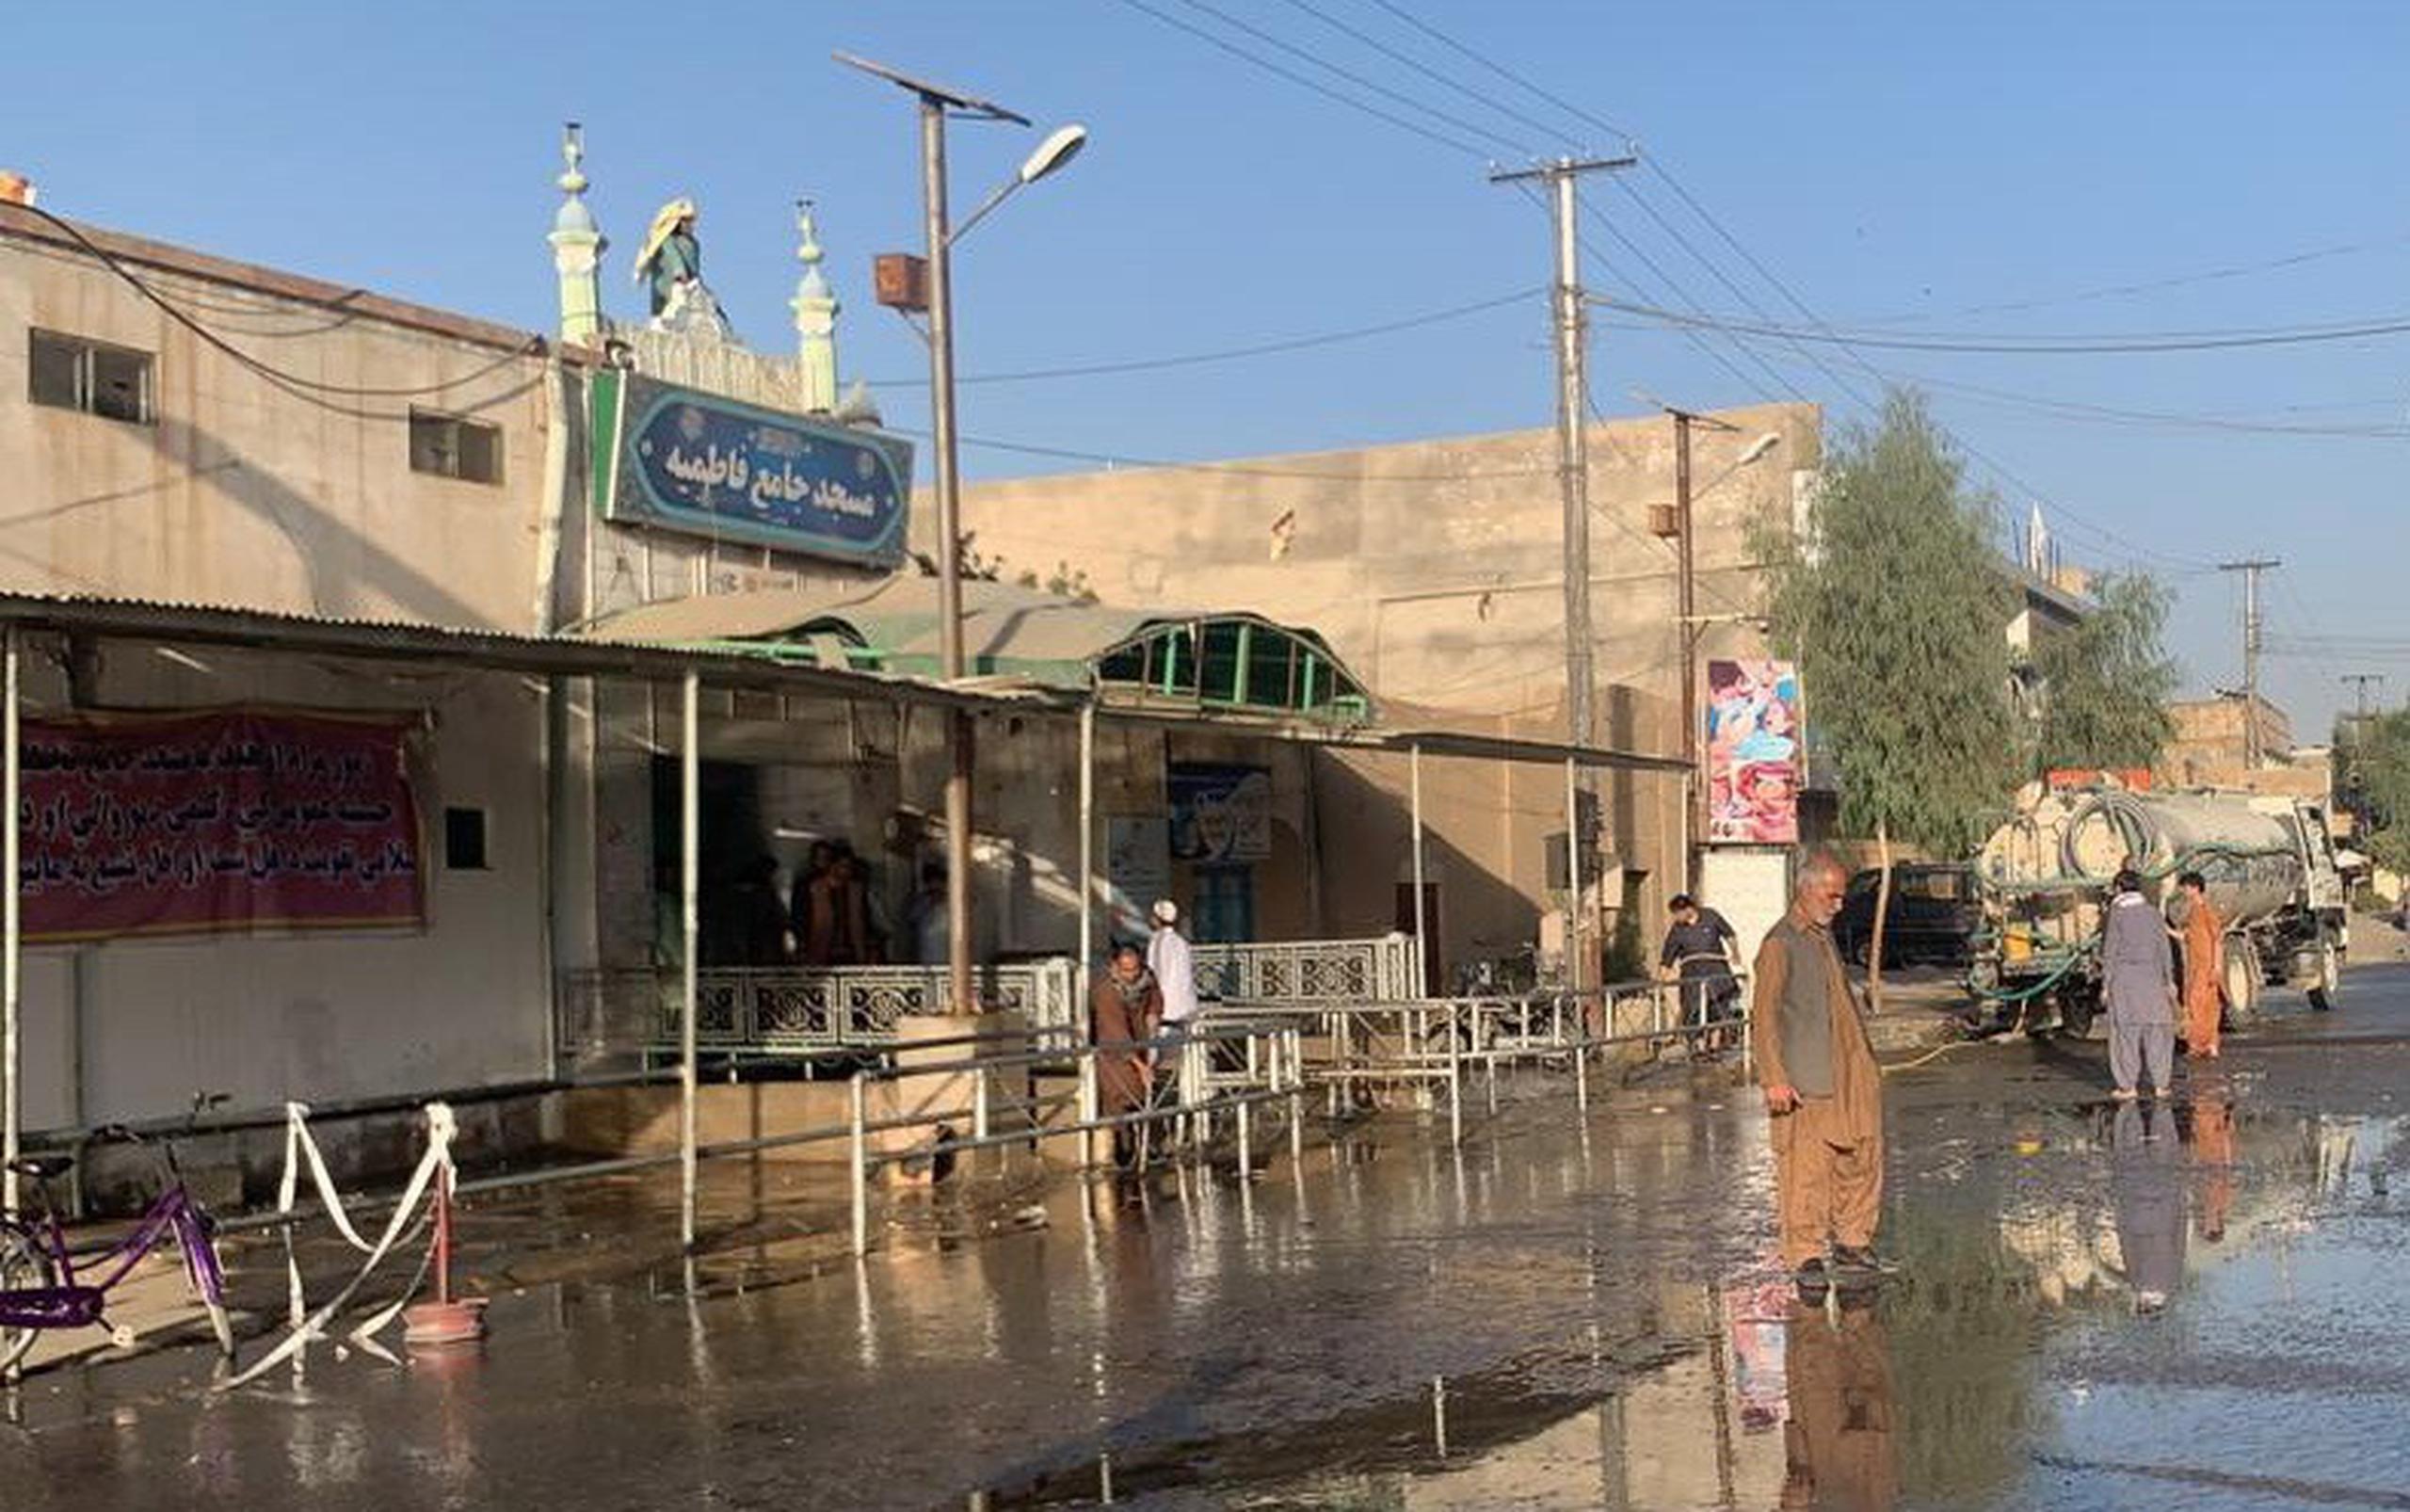 Este ataque se produce justo una semana después de que un atentado suicida contra una mezquita de la minoría chií en la ciudad de Kunduz, en el norte de Afganistán, dejara al menos 80 muertos y más de un centenar de heridos.